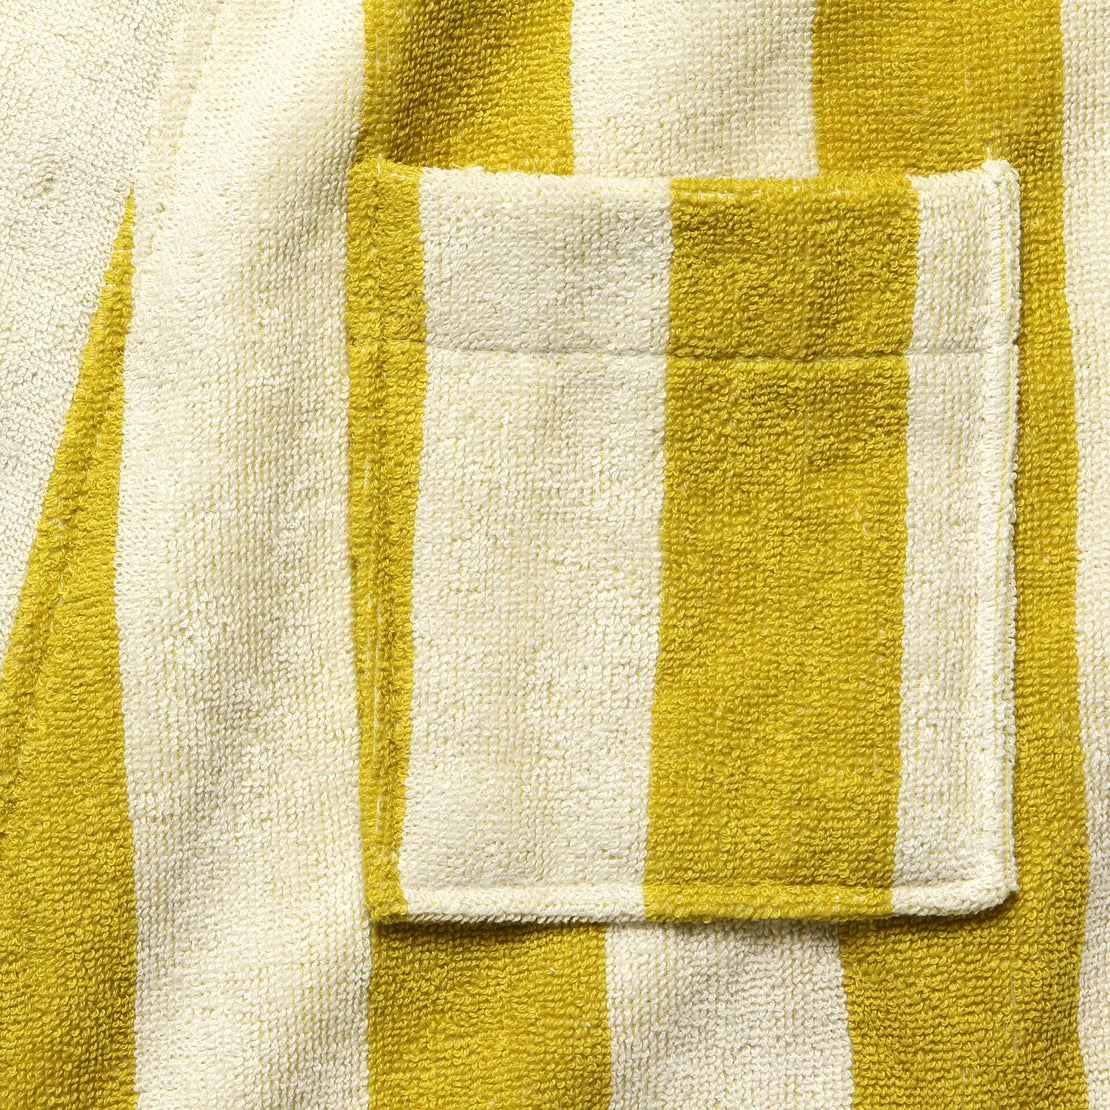 Mustard Terry Robe - Yellow/Cream Stripe